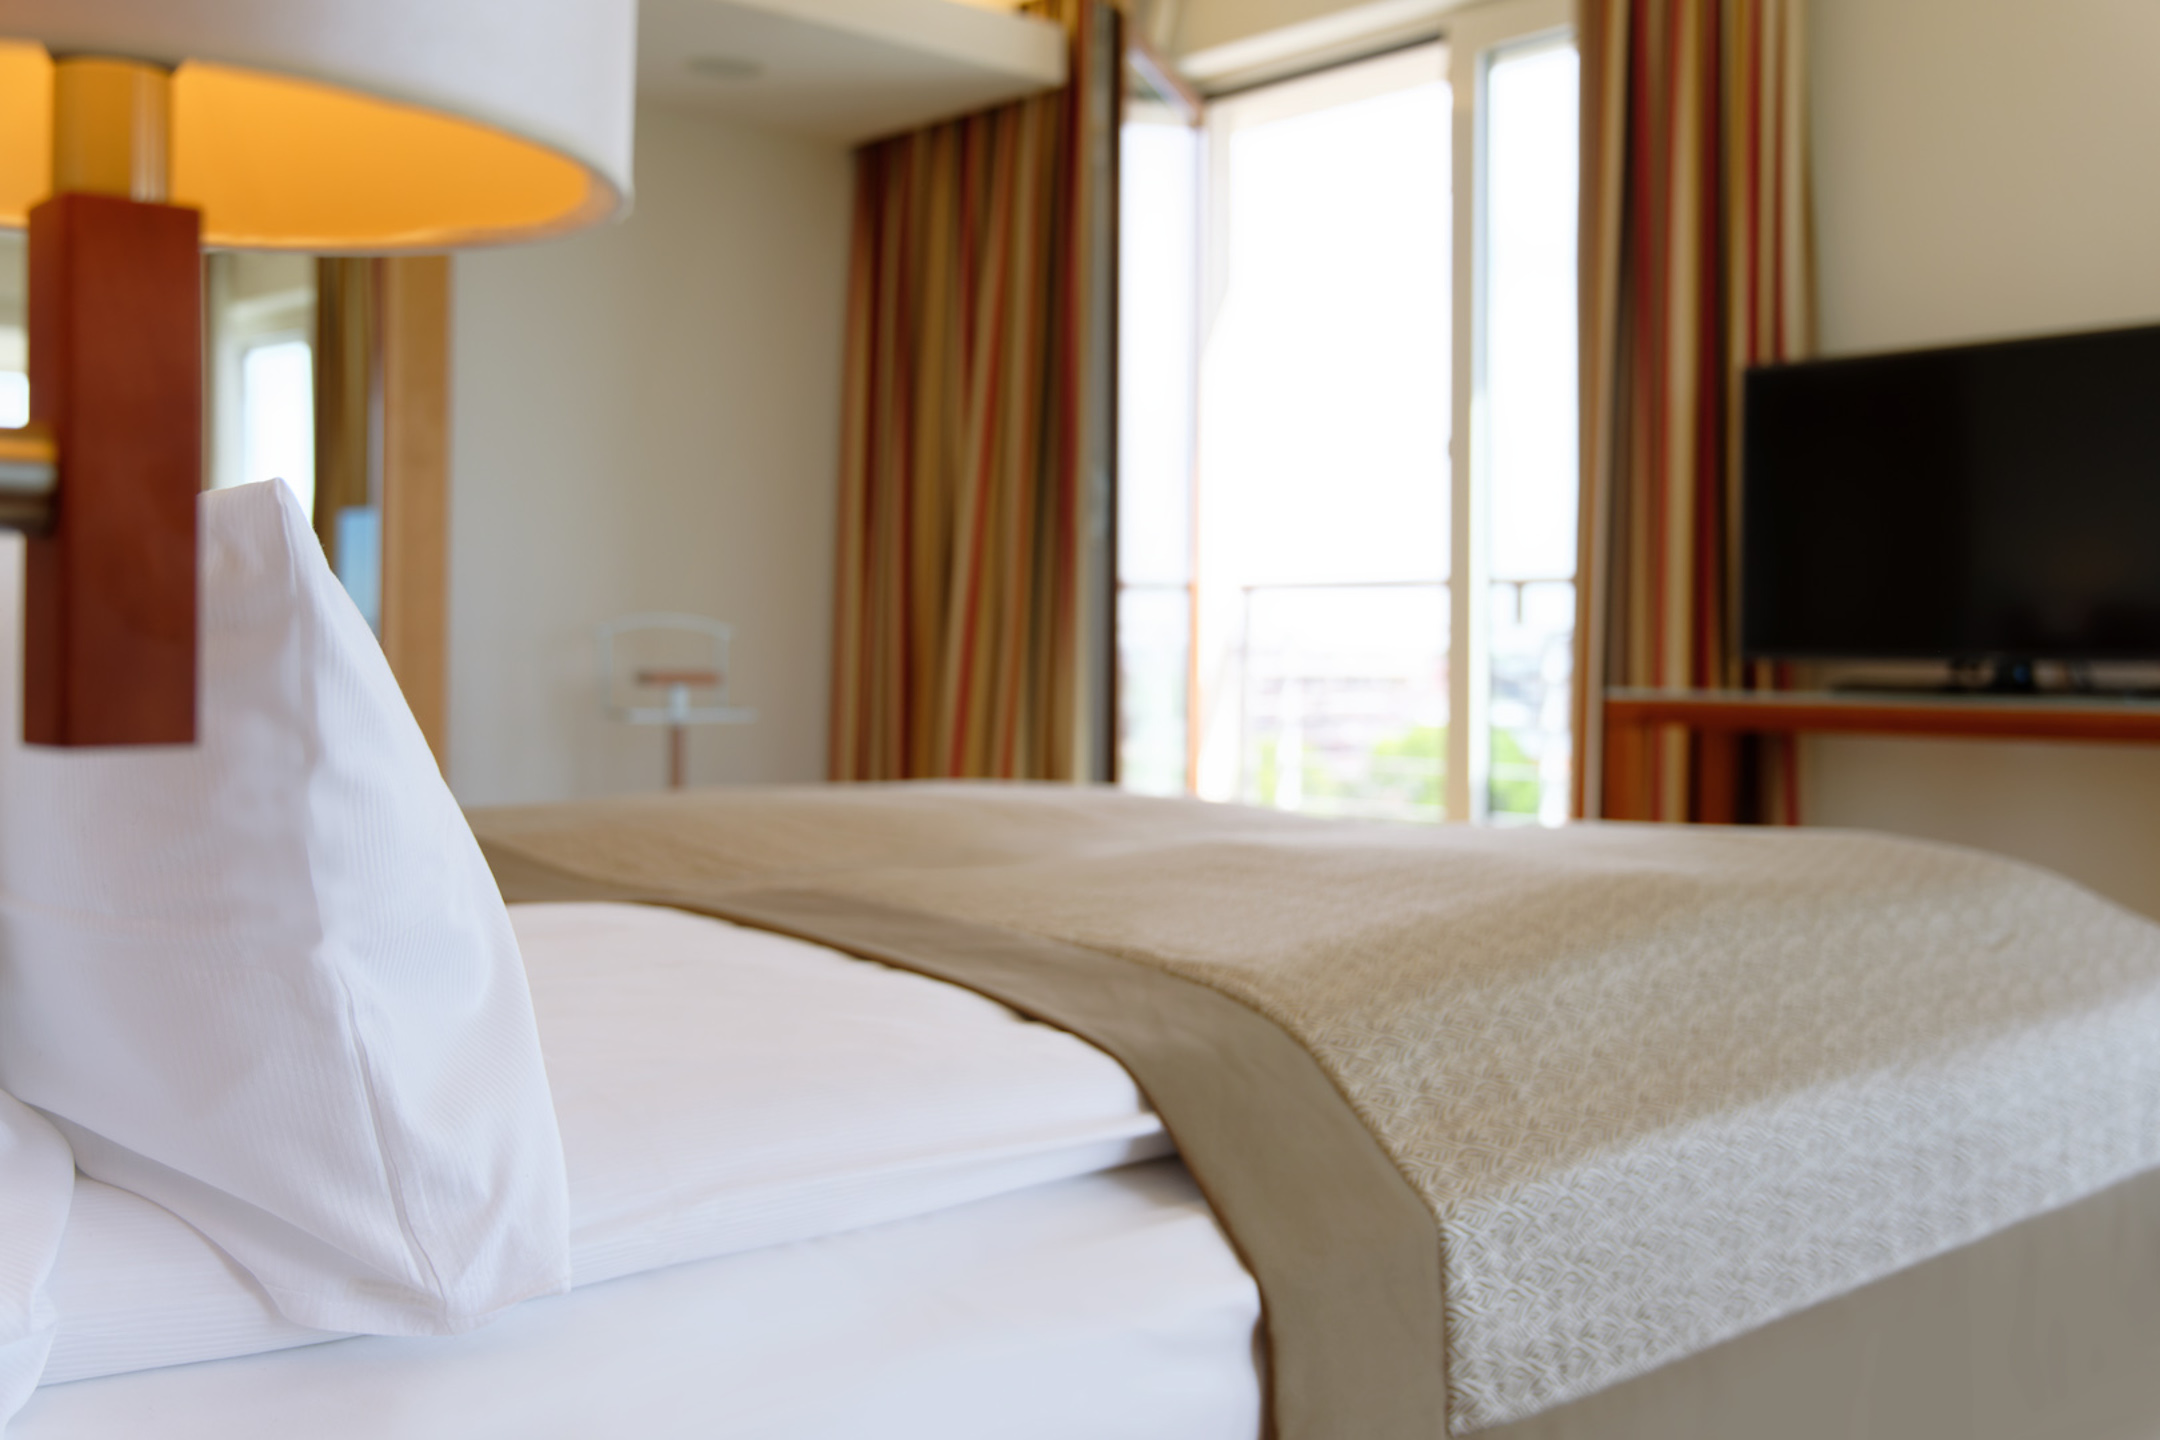 Bett in der Executiven Suite | ATLANTIC Hotel Wilhelmshaven